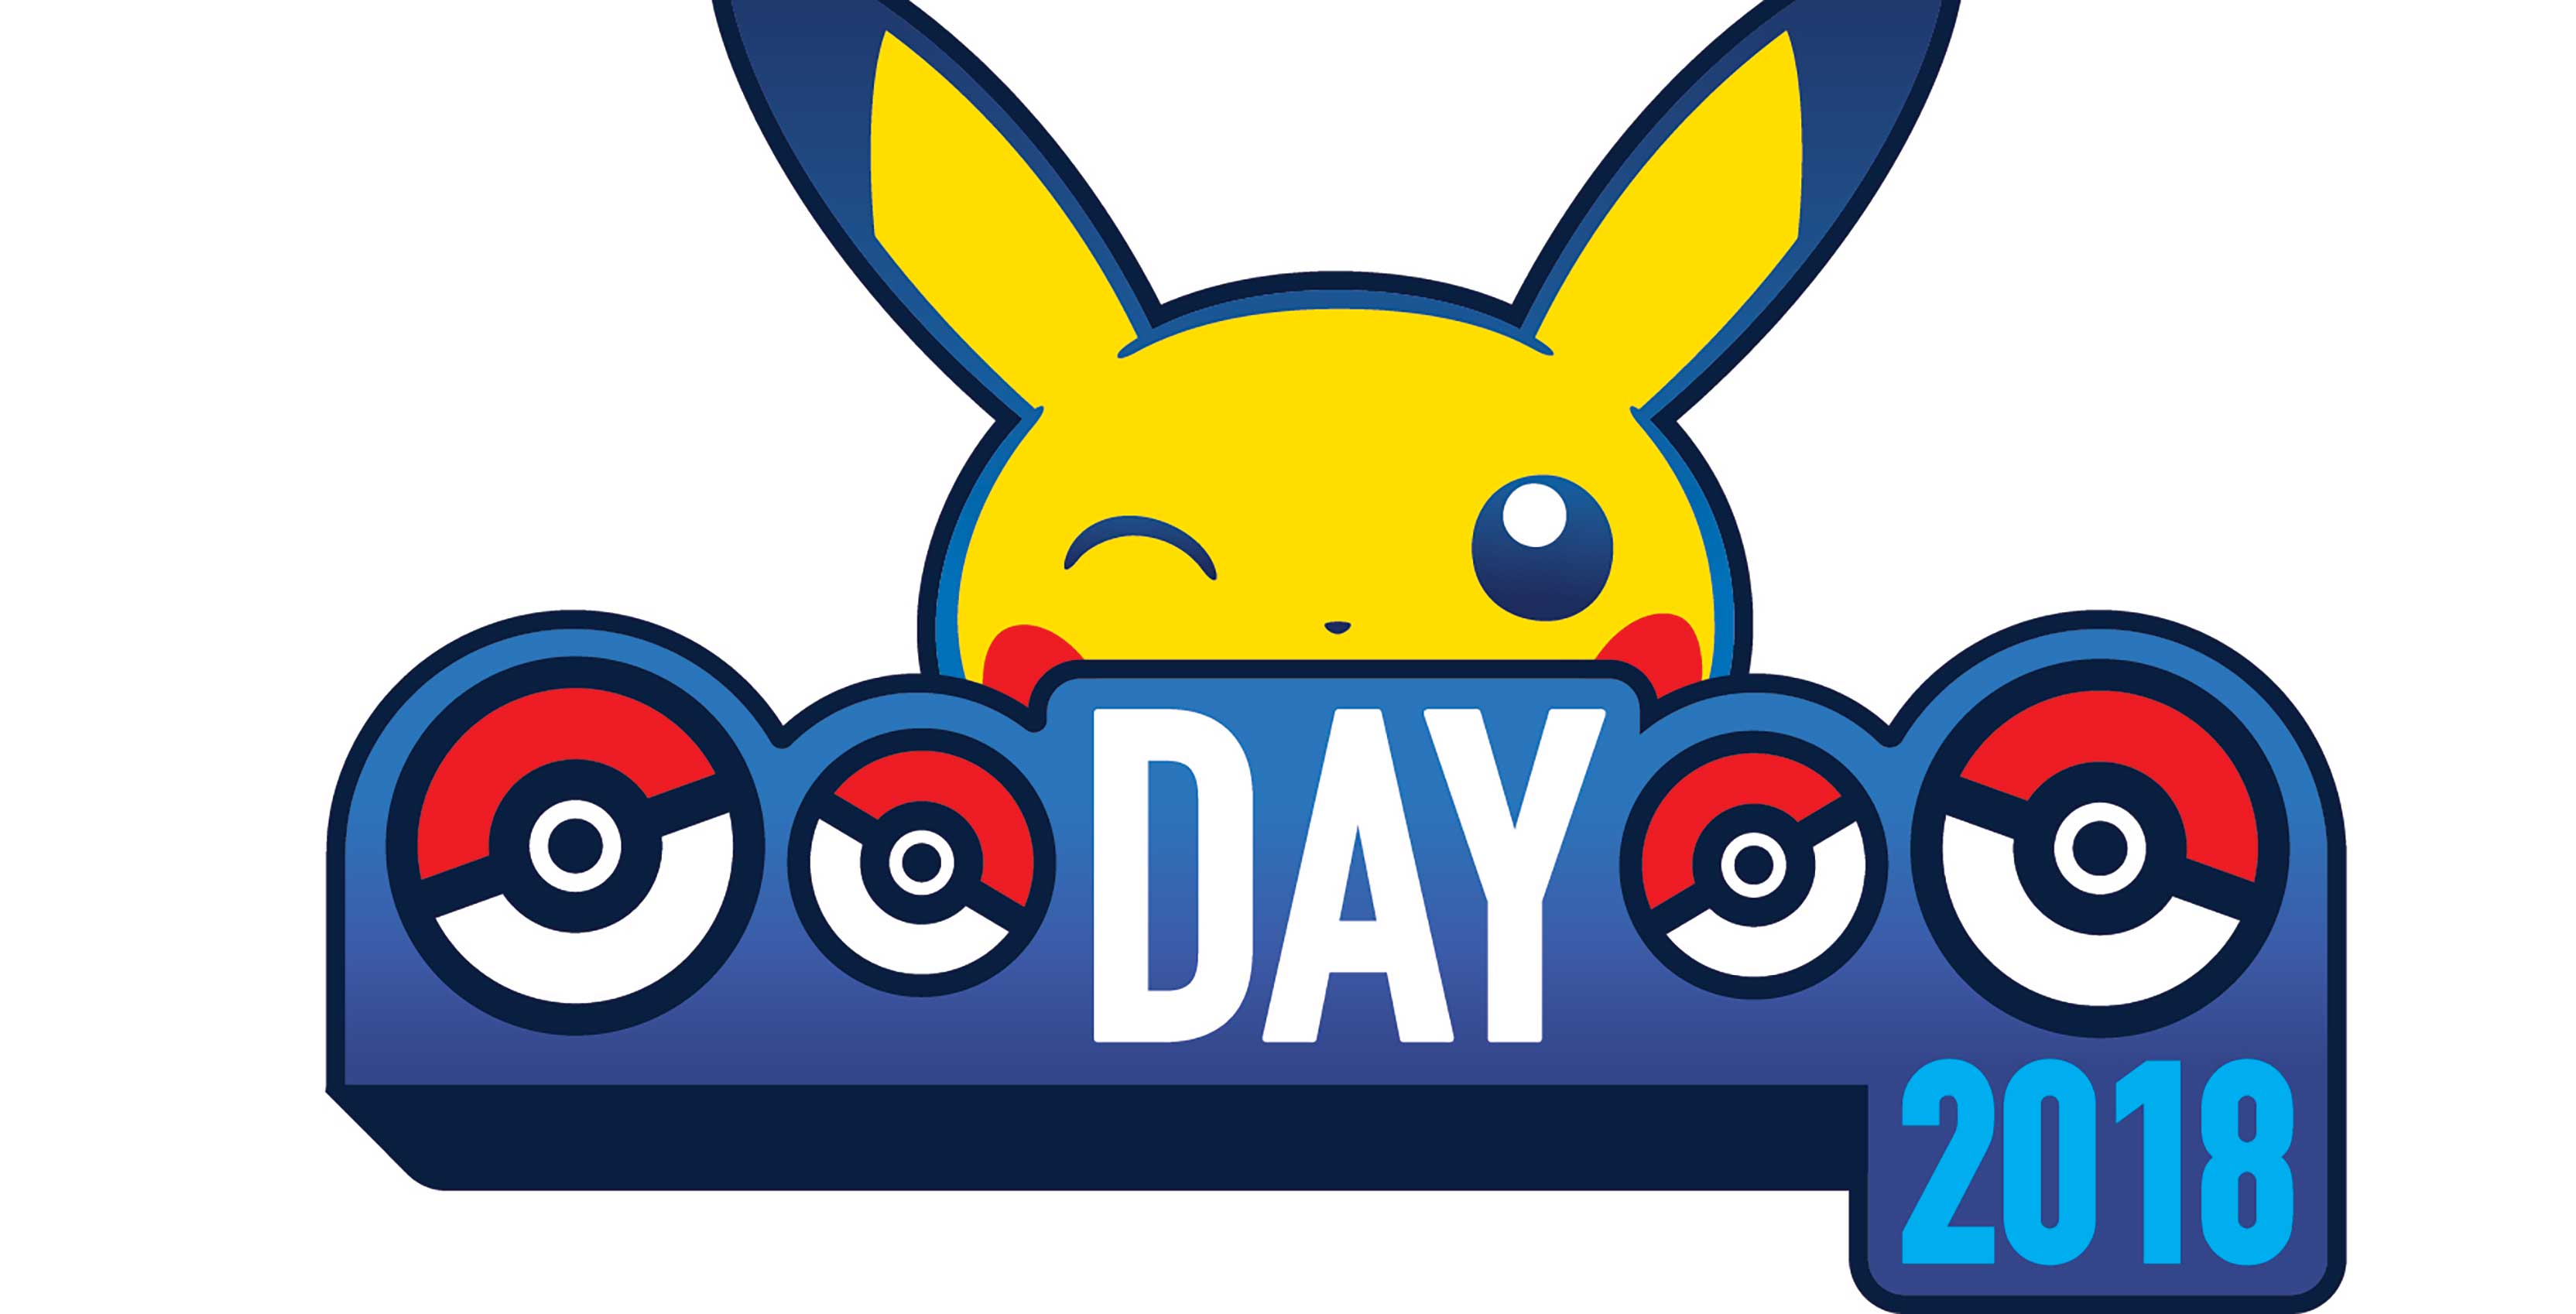 Pokémon Day 2018